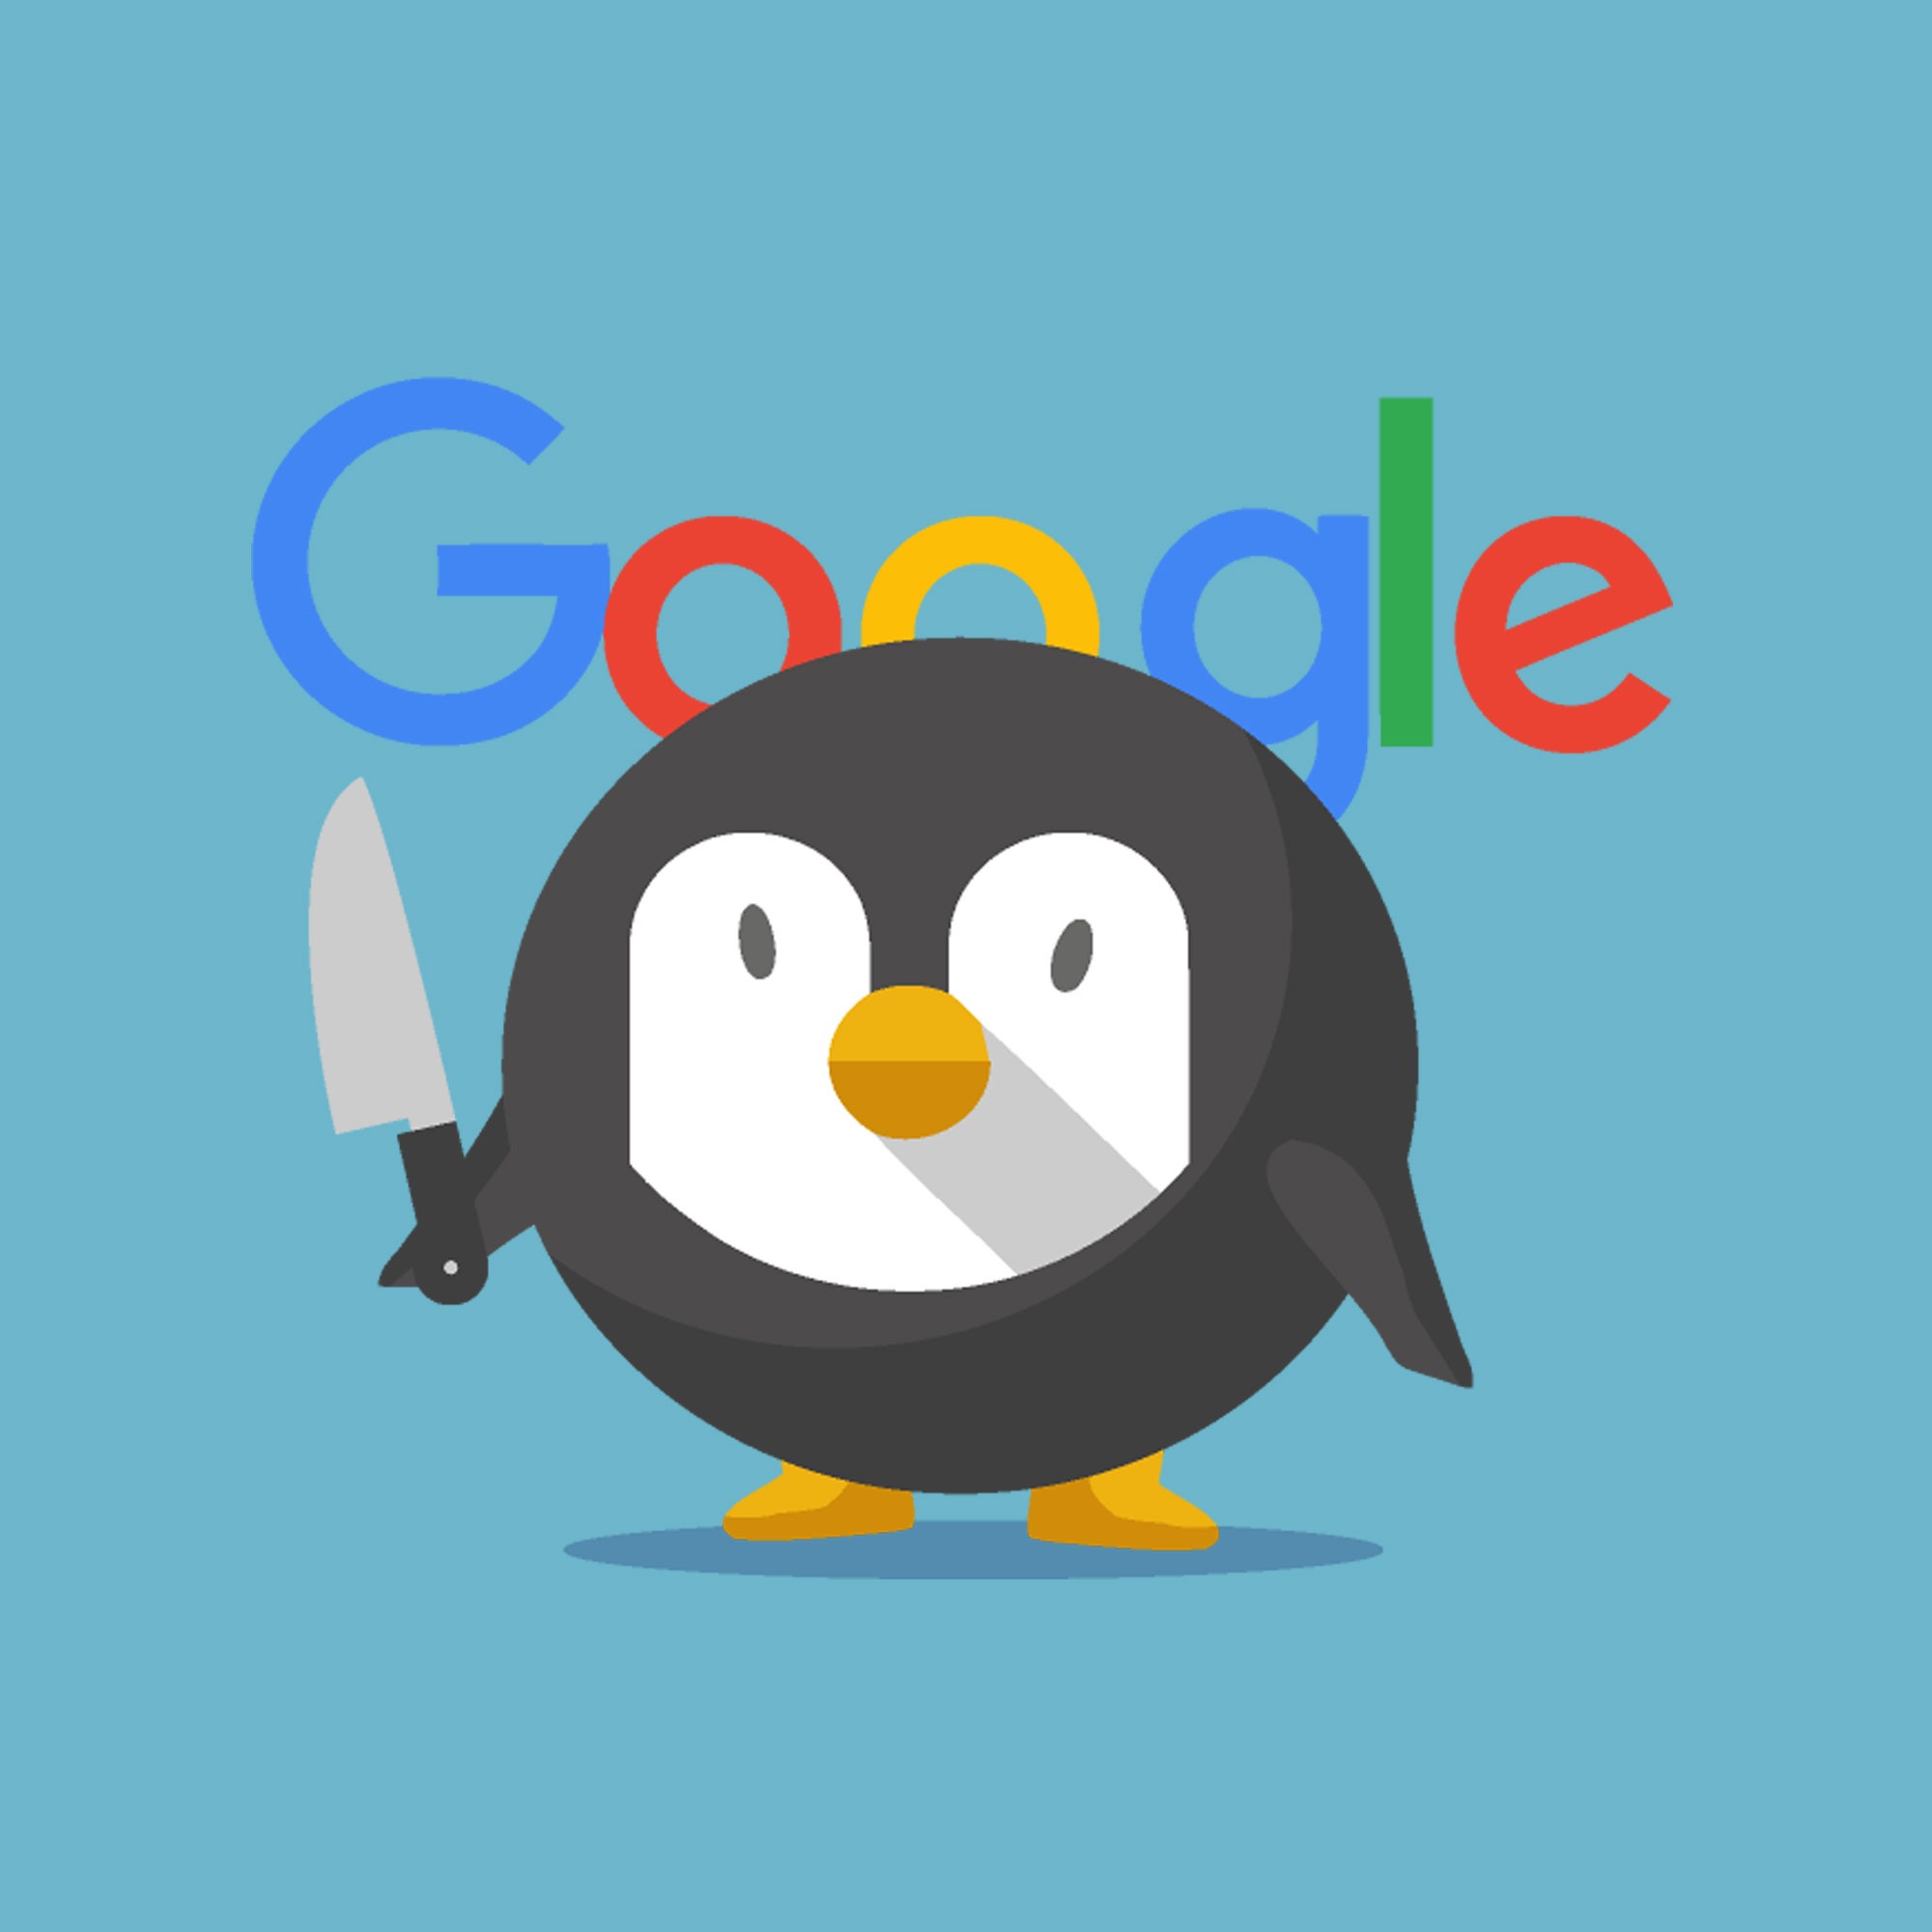 الگوریتم جدید گوگل با نام پنگوئن